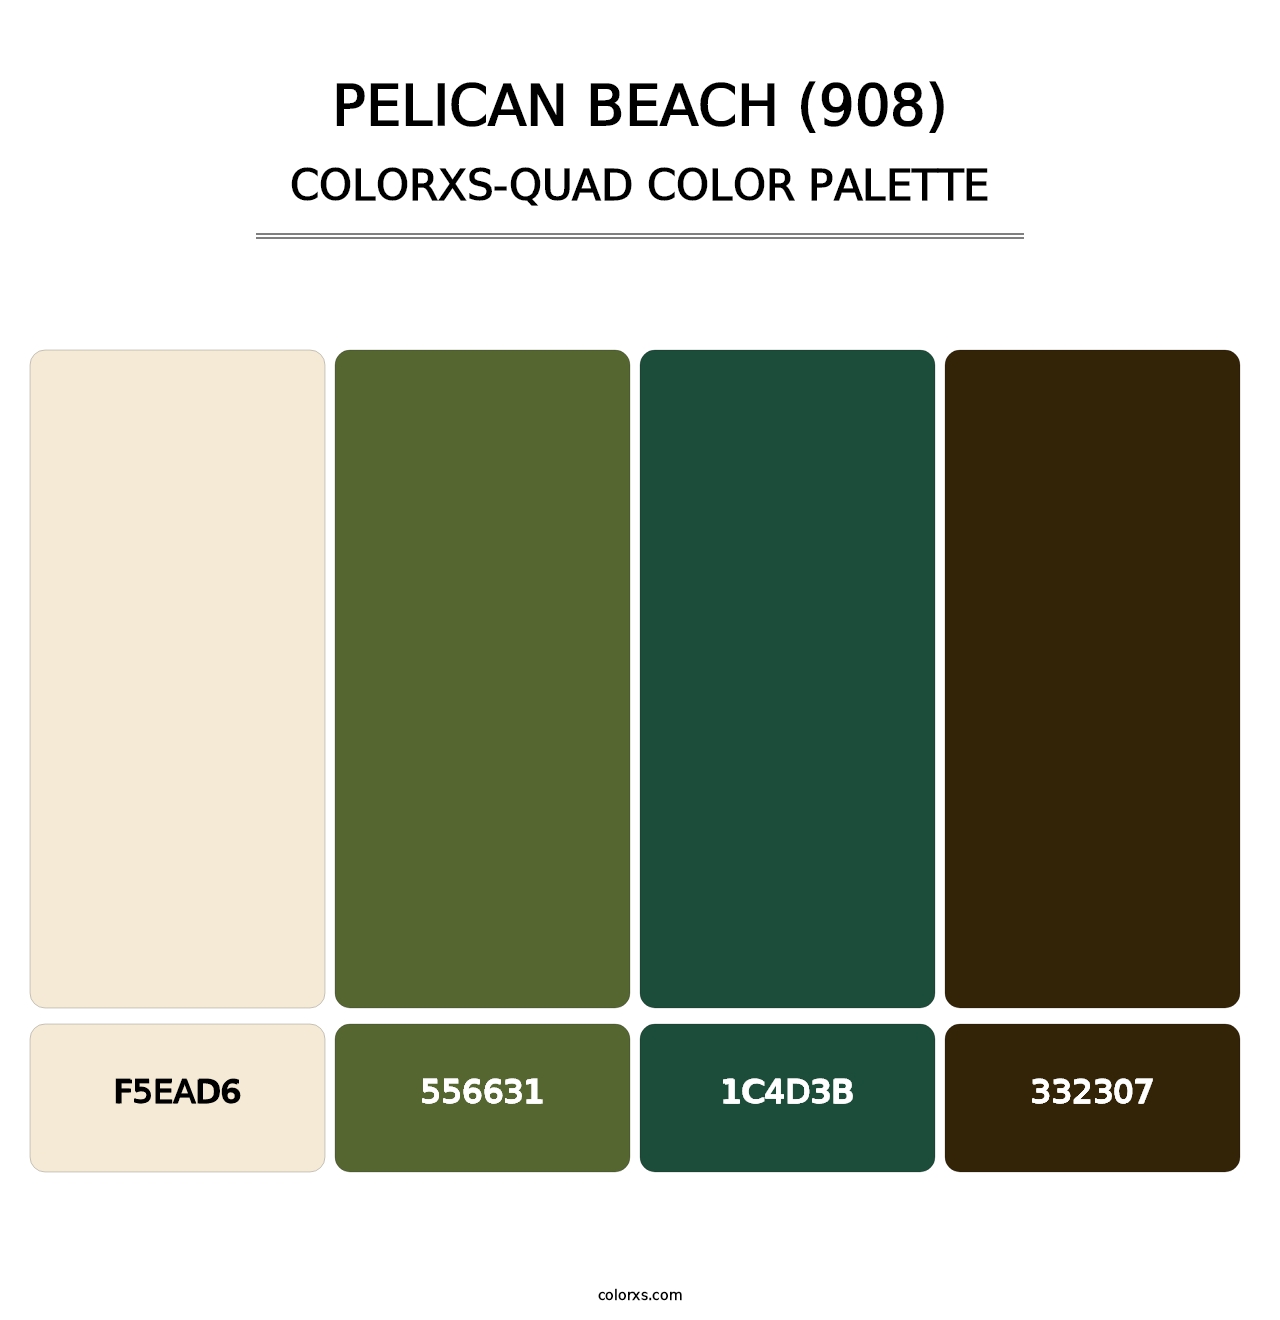 Pelican Beach (908) - Colorxs Quad Palette